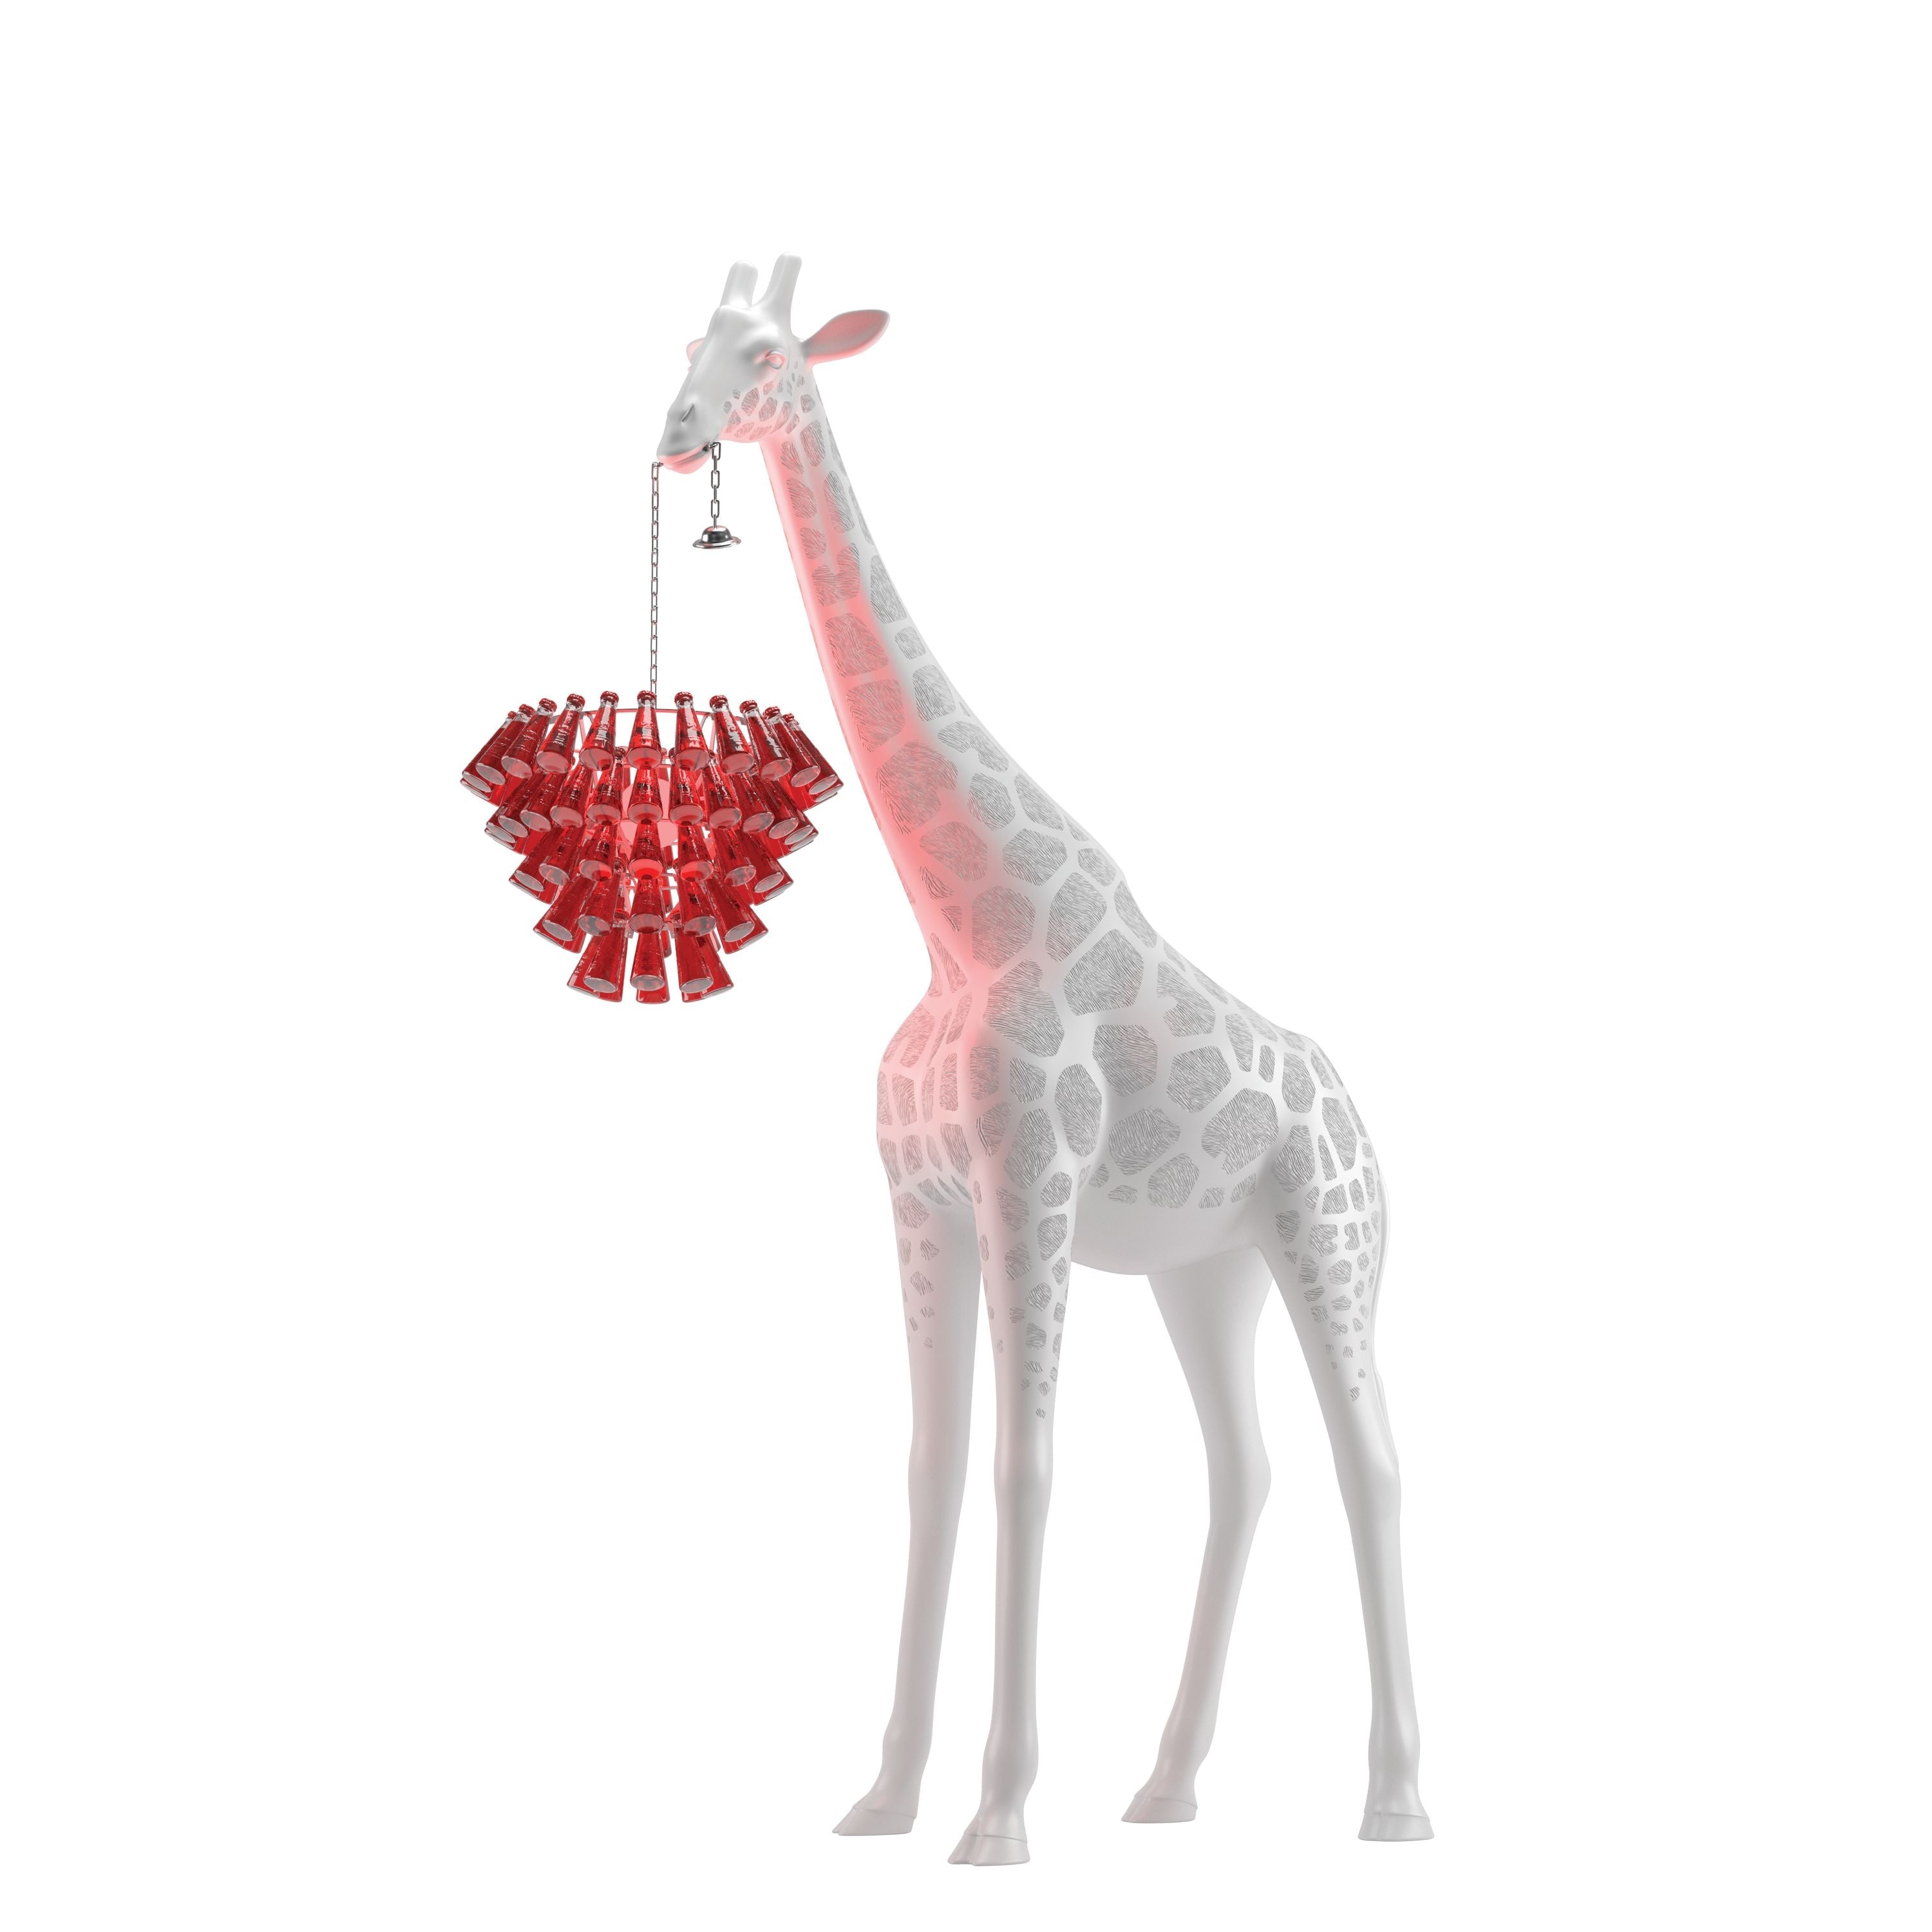 Qeeboo giraff i kjærlighet m utendørs hvit campari